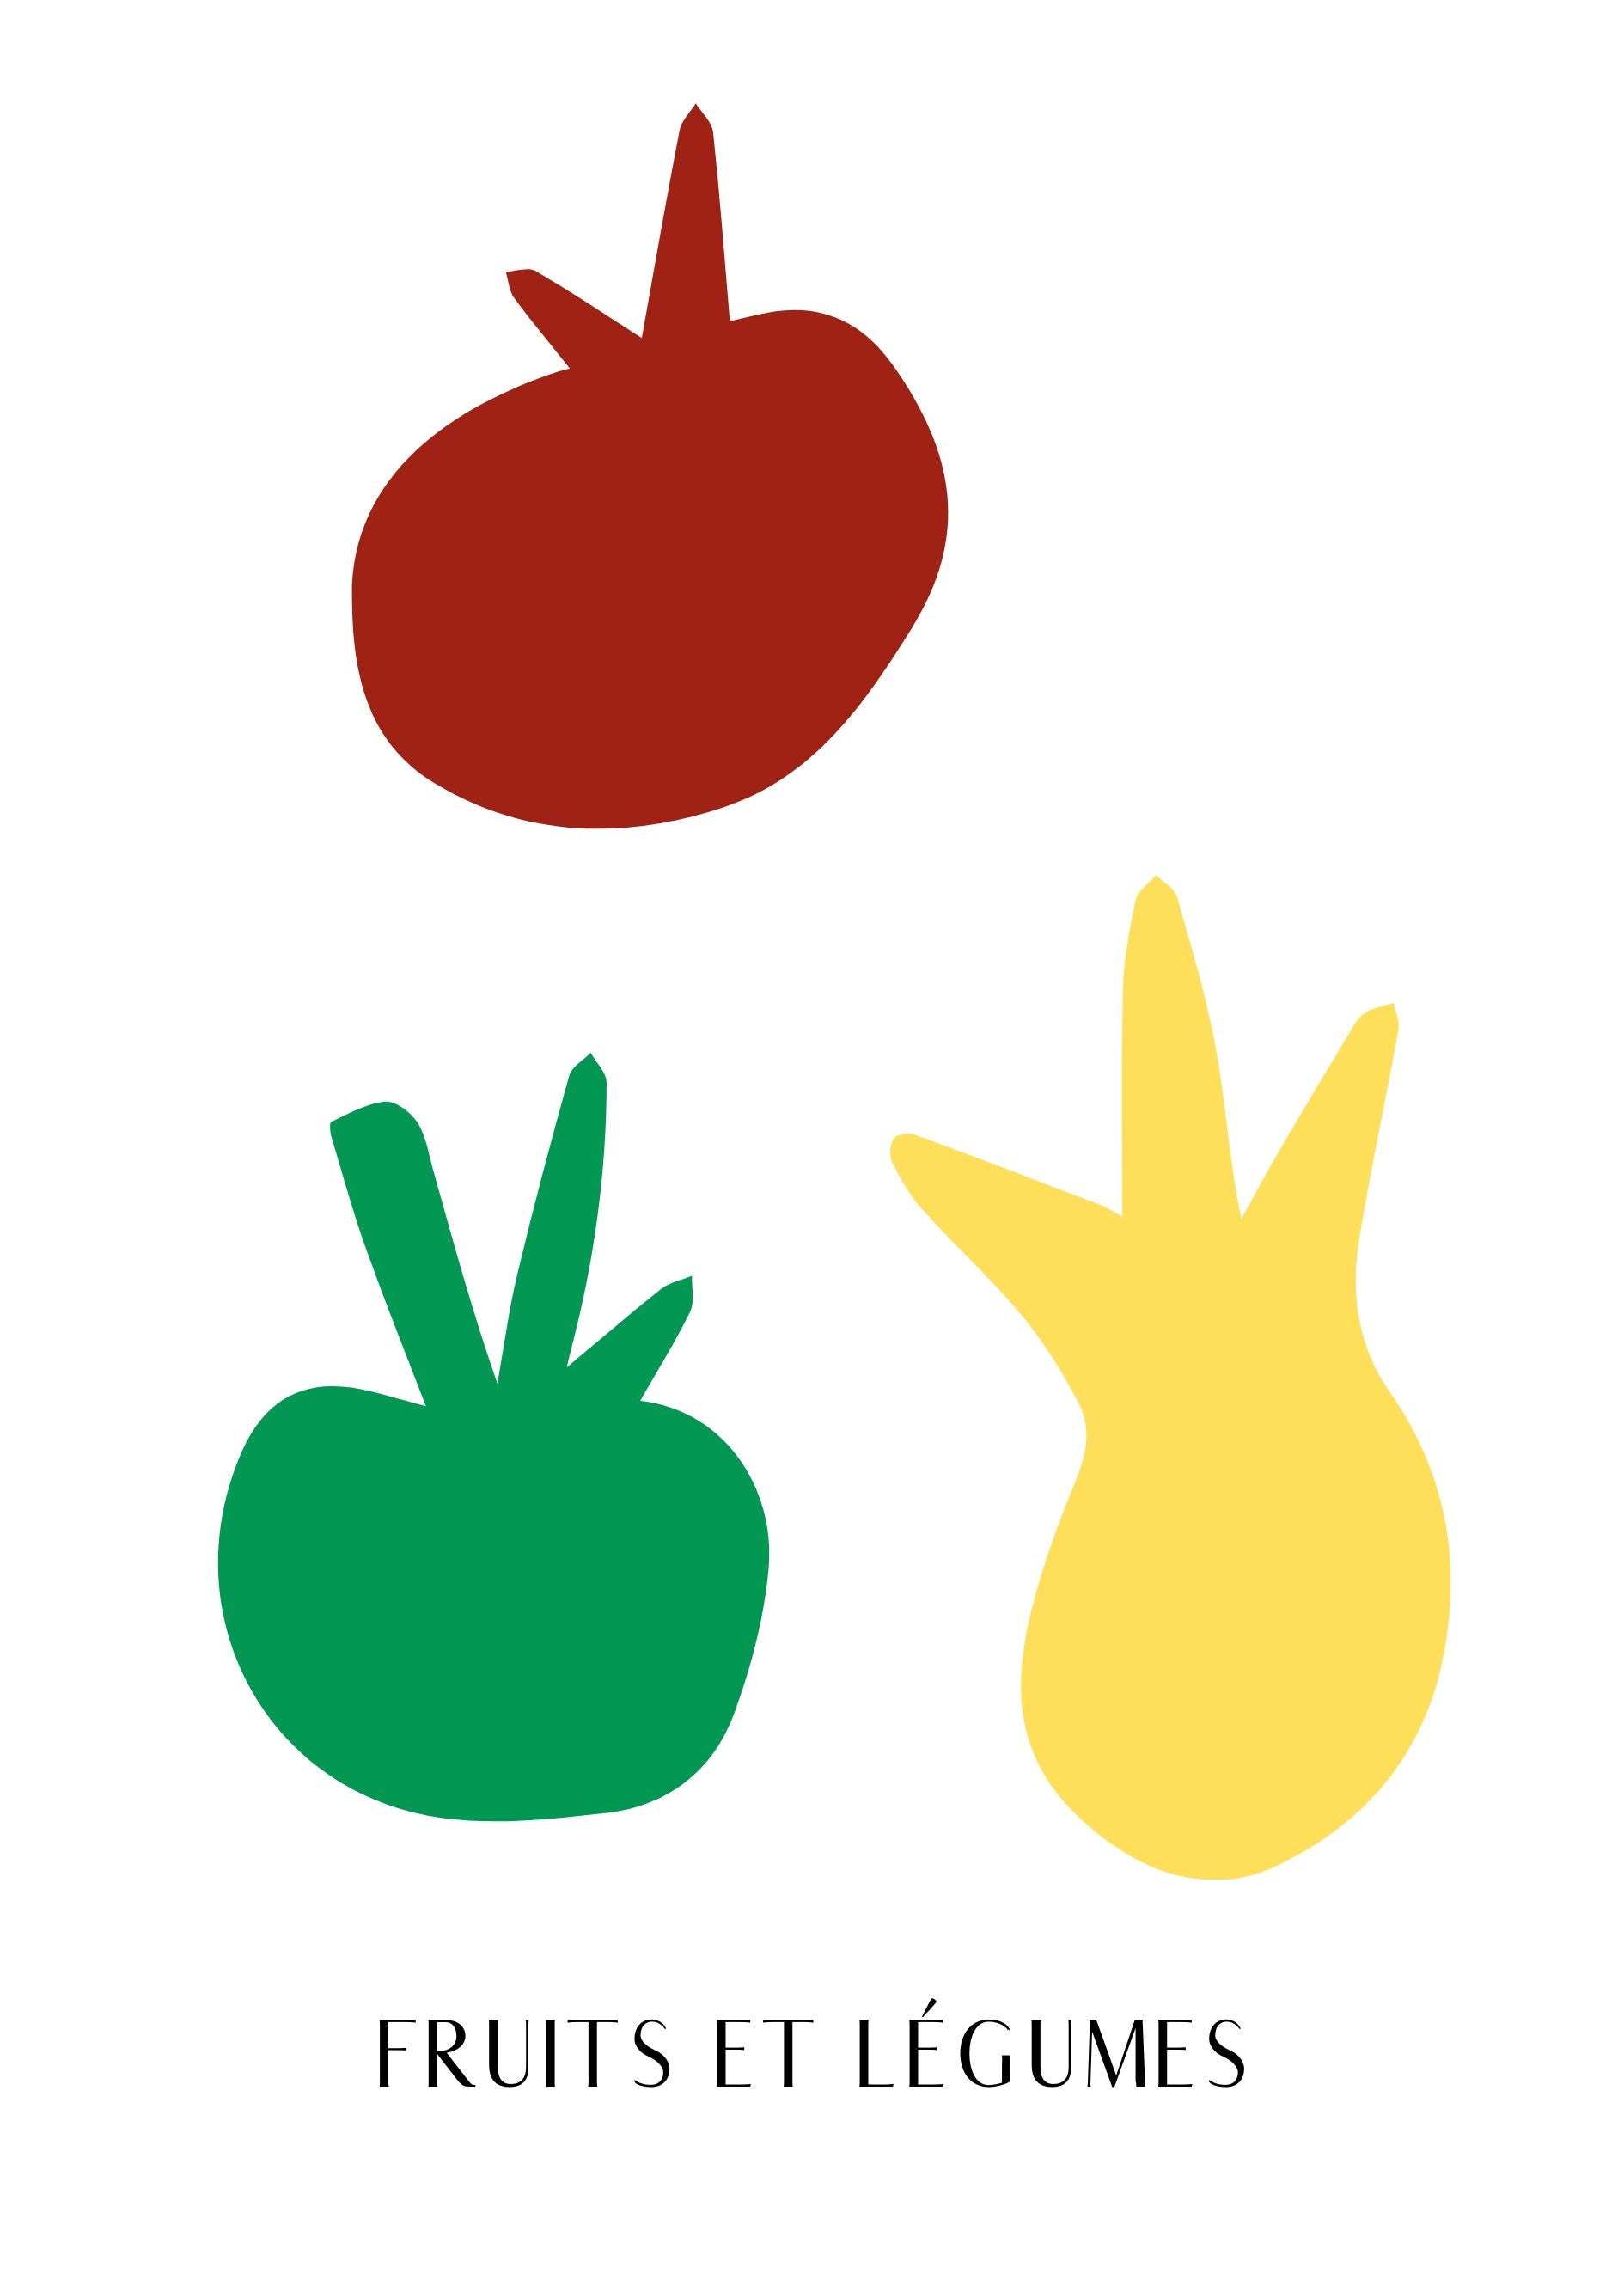 Fruits et legumes poster